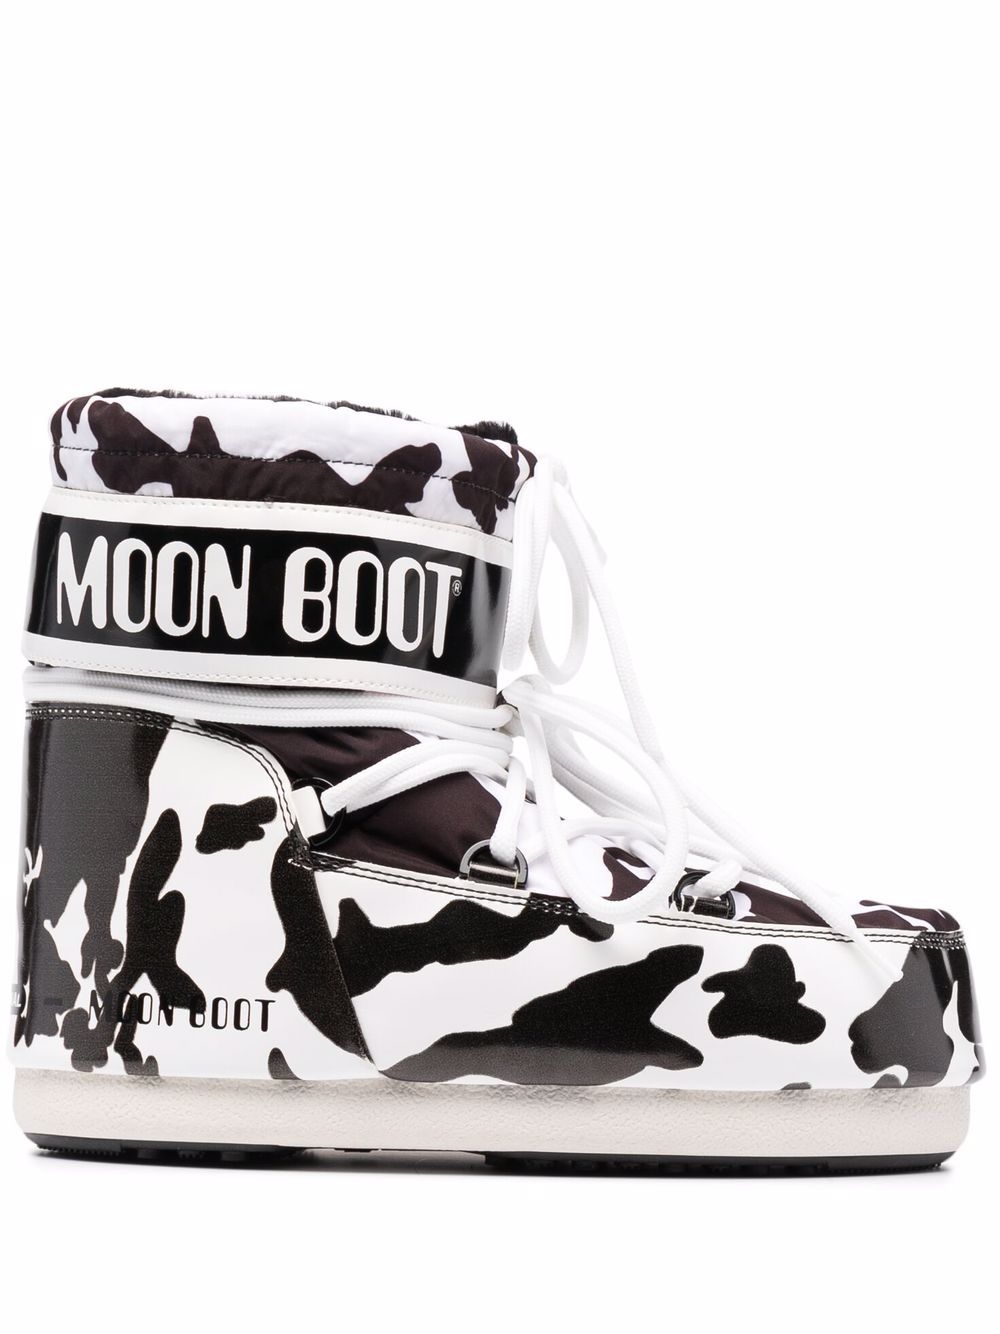 фото Moon boot сапоги mars с анималистичным принтом